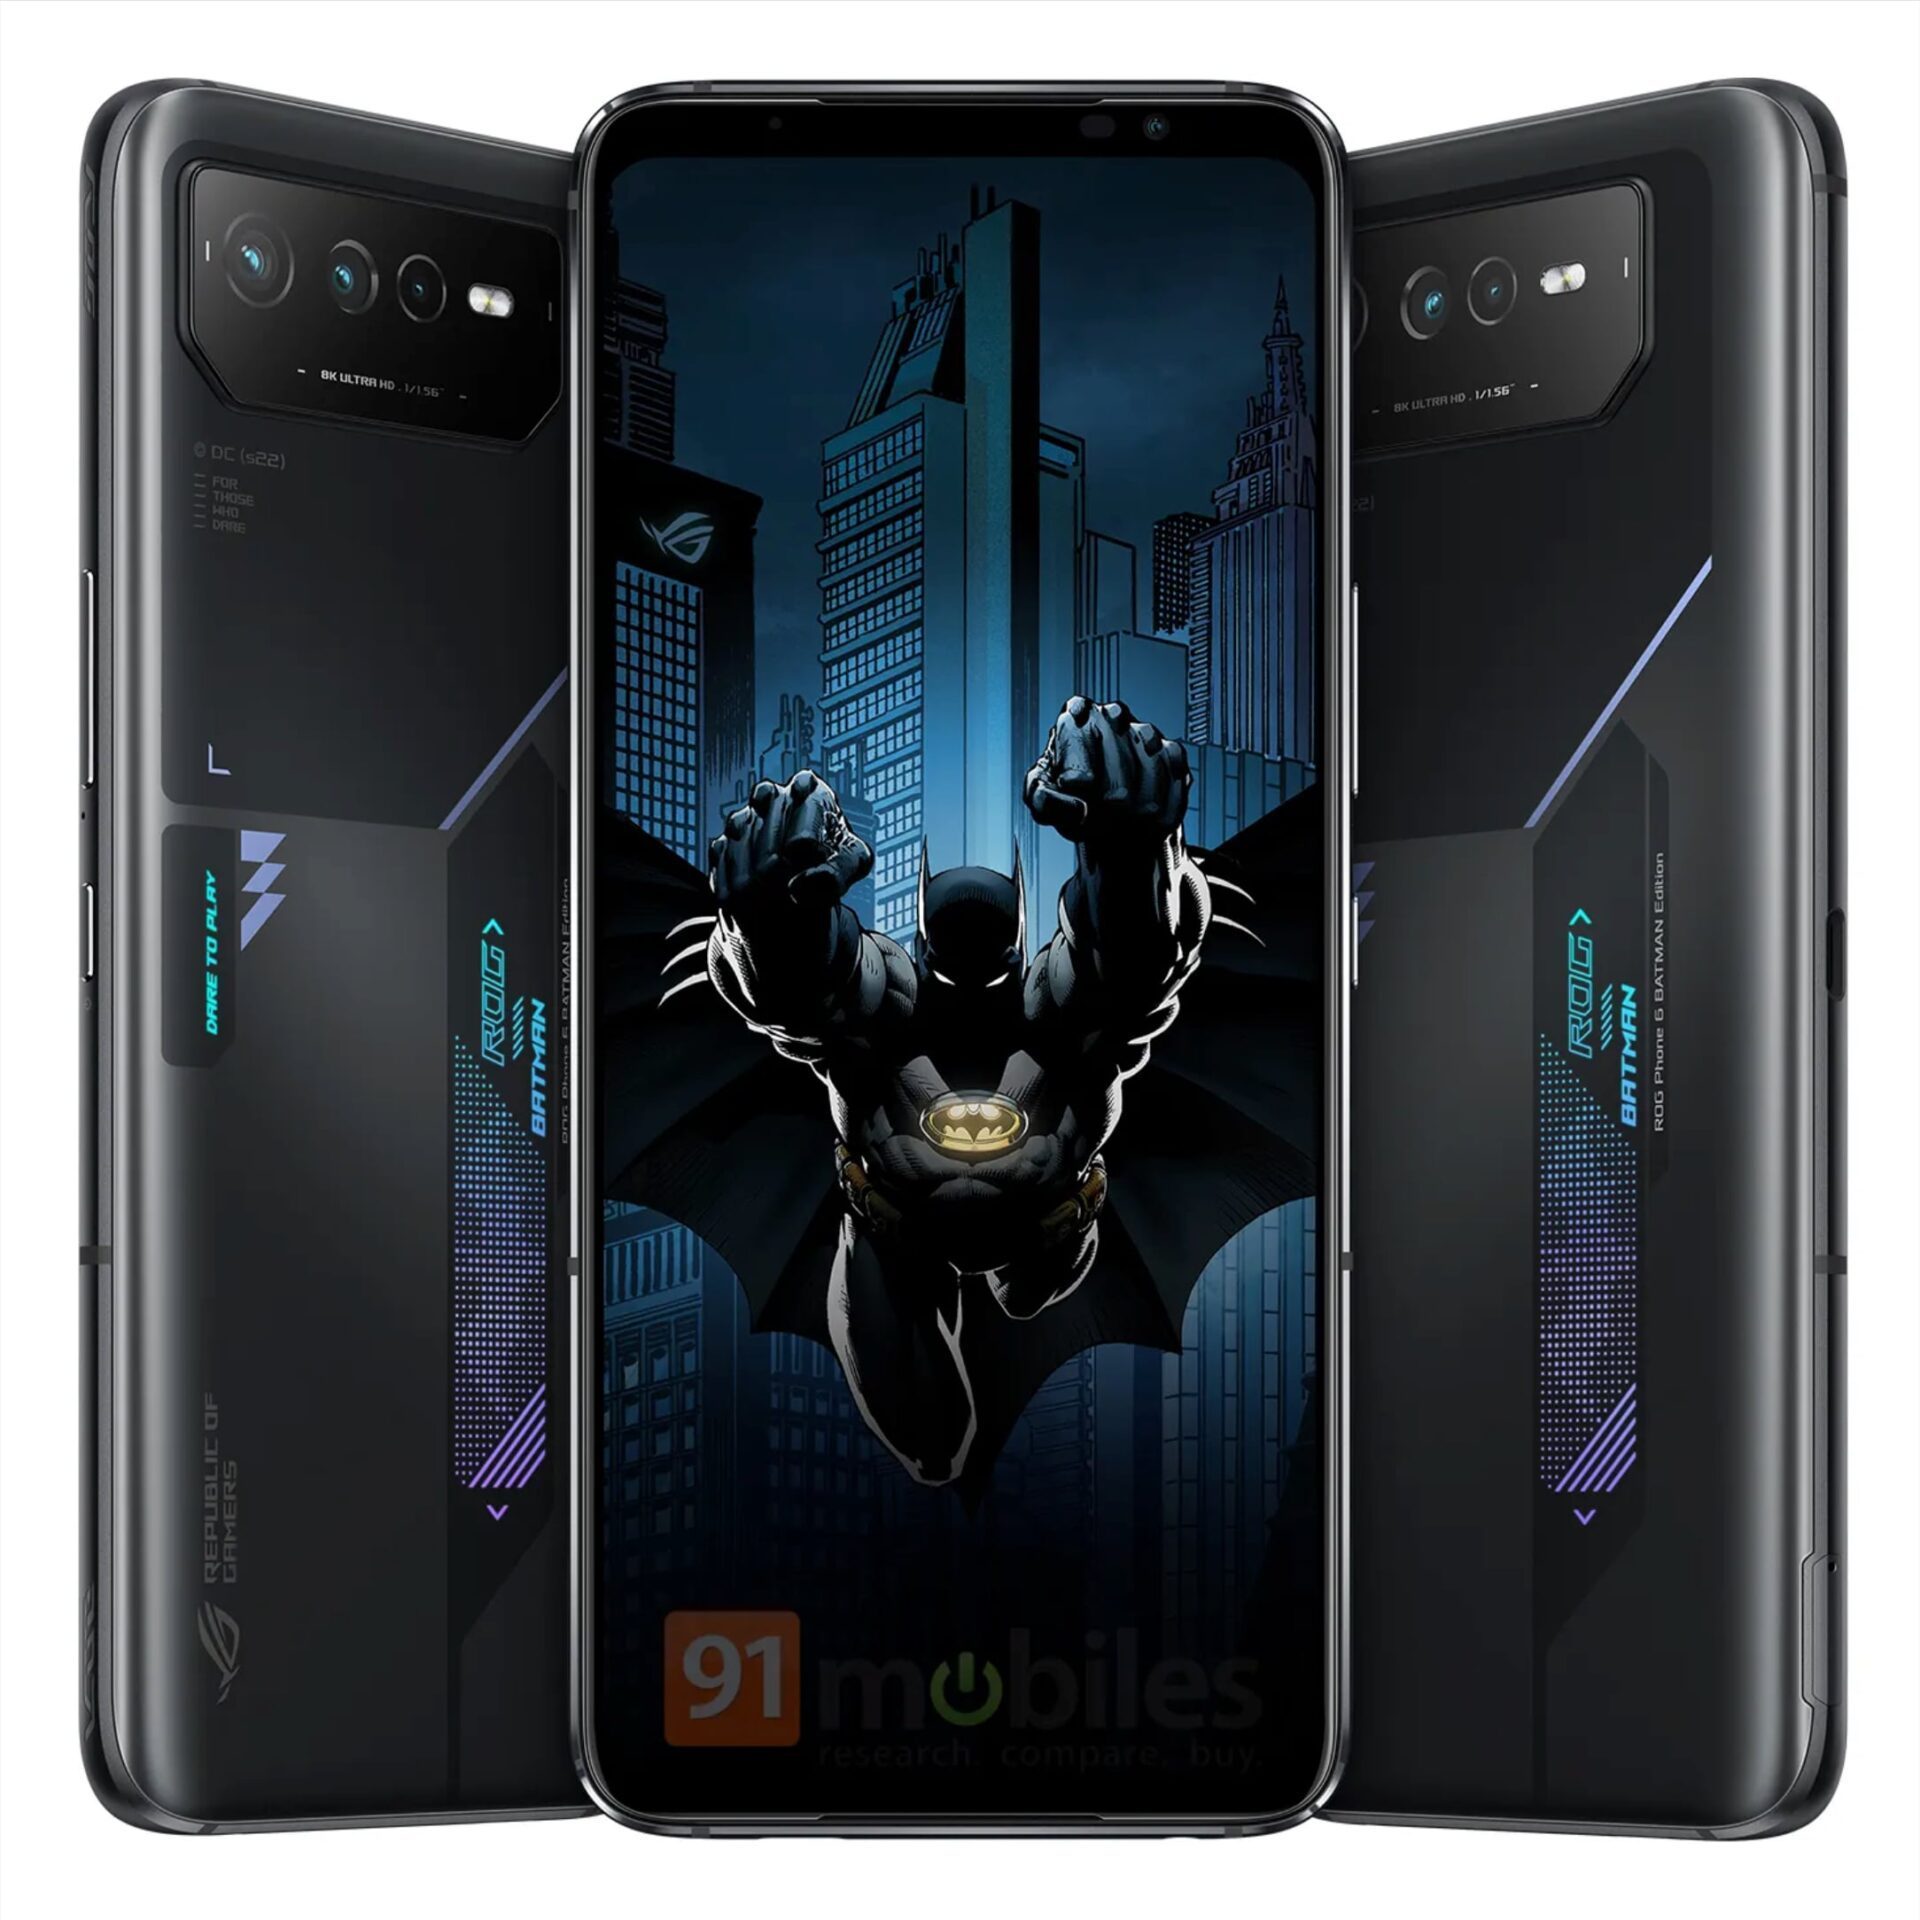 Le smartphone Batman d'Asus se dévoile à travers une première image, et on  l'adore déjà